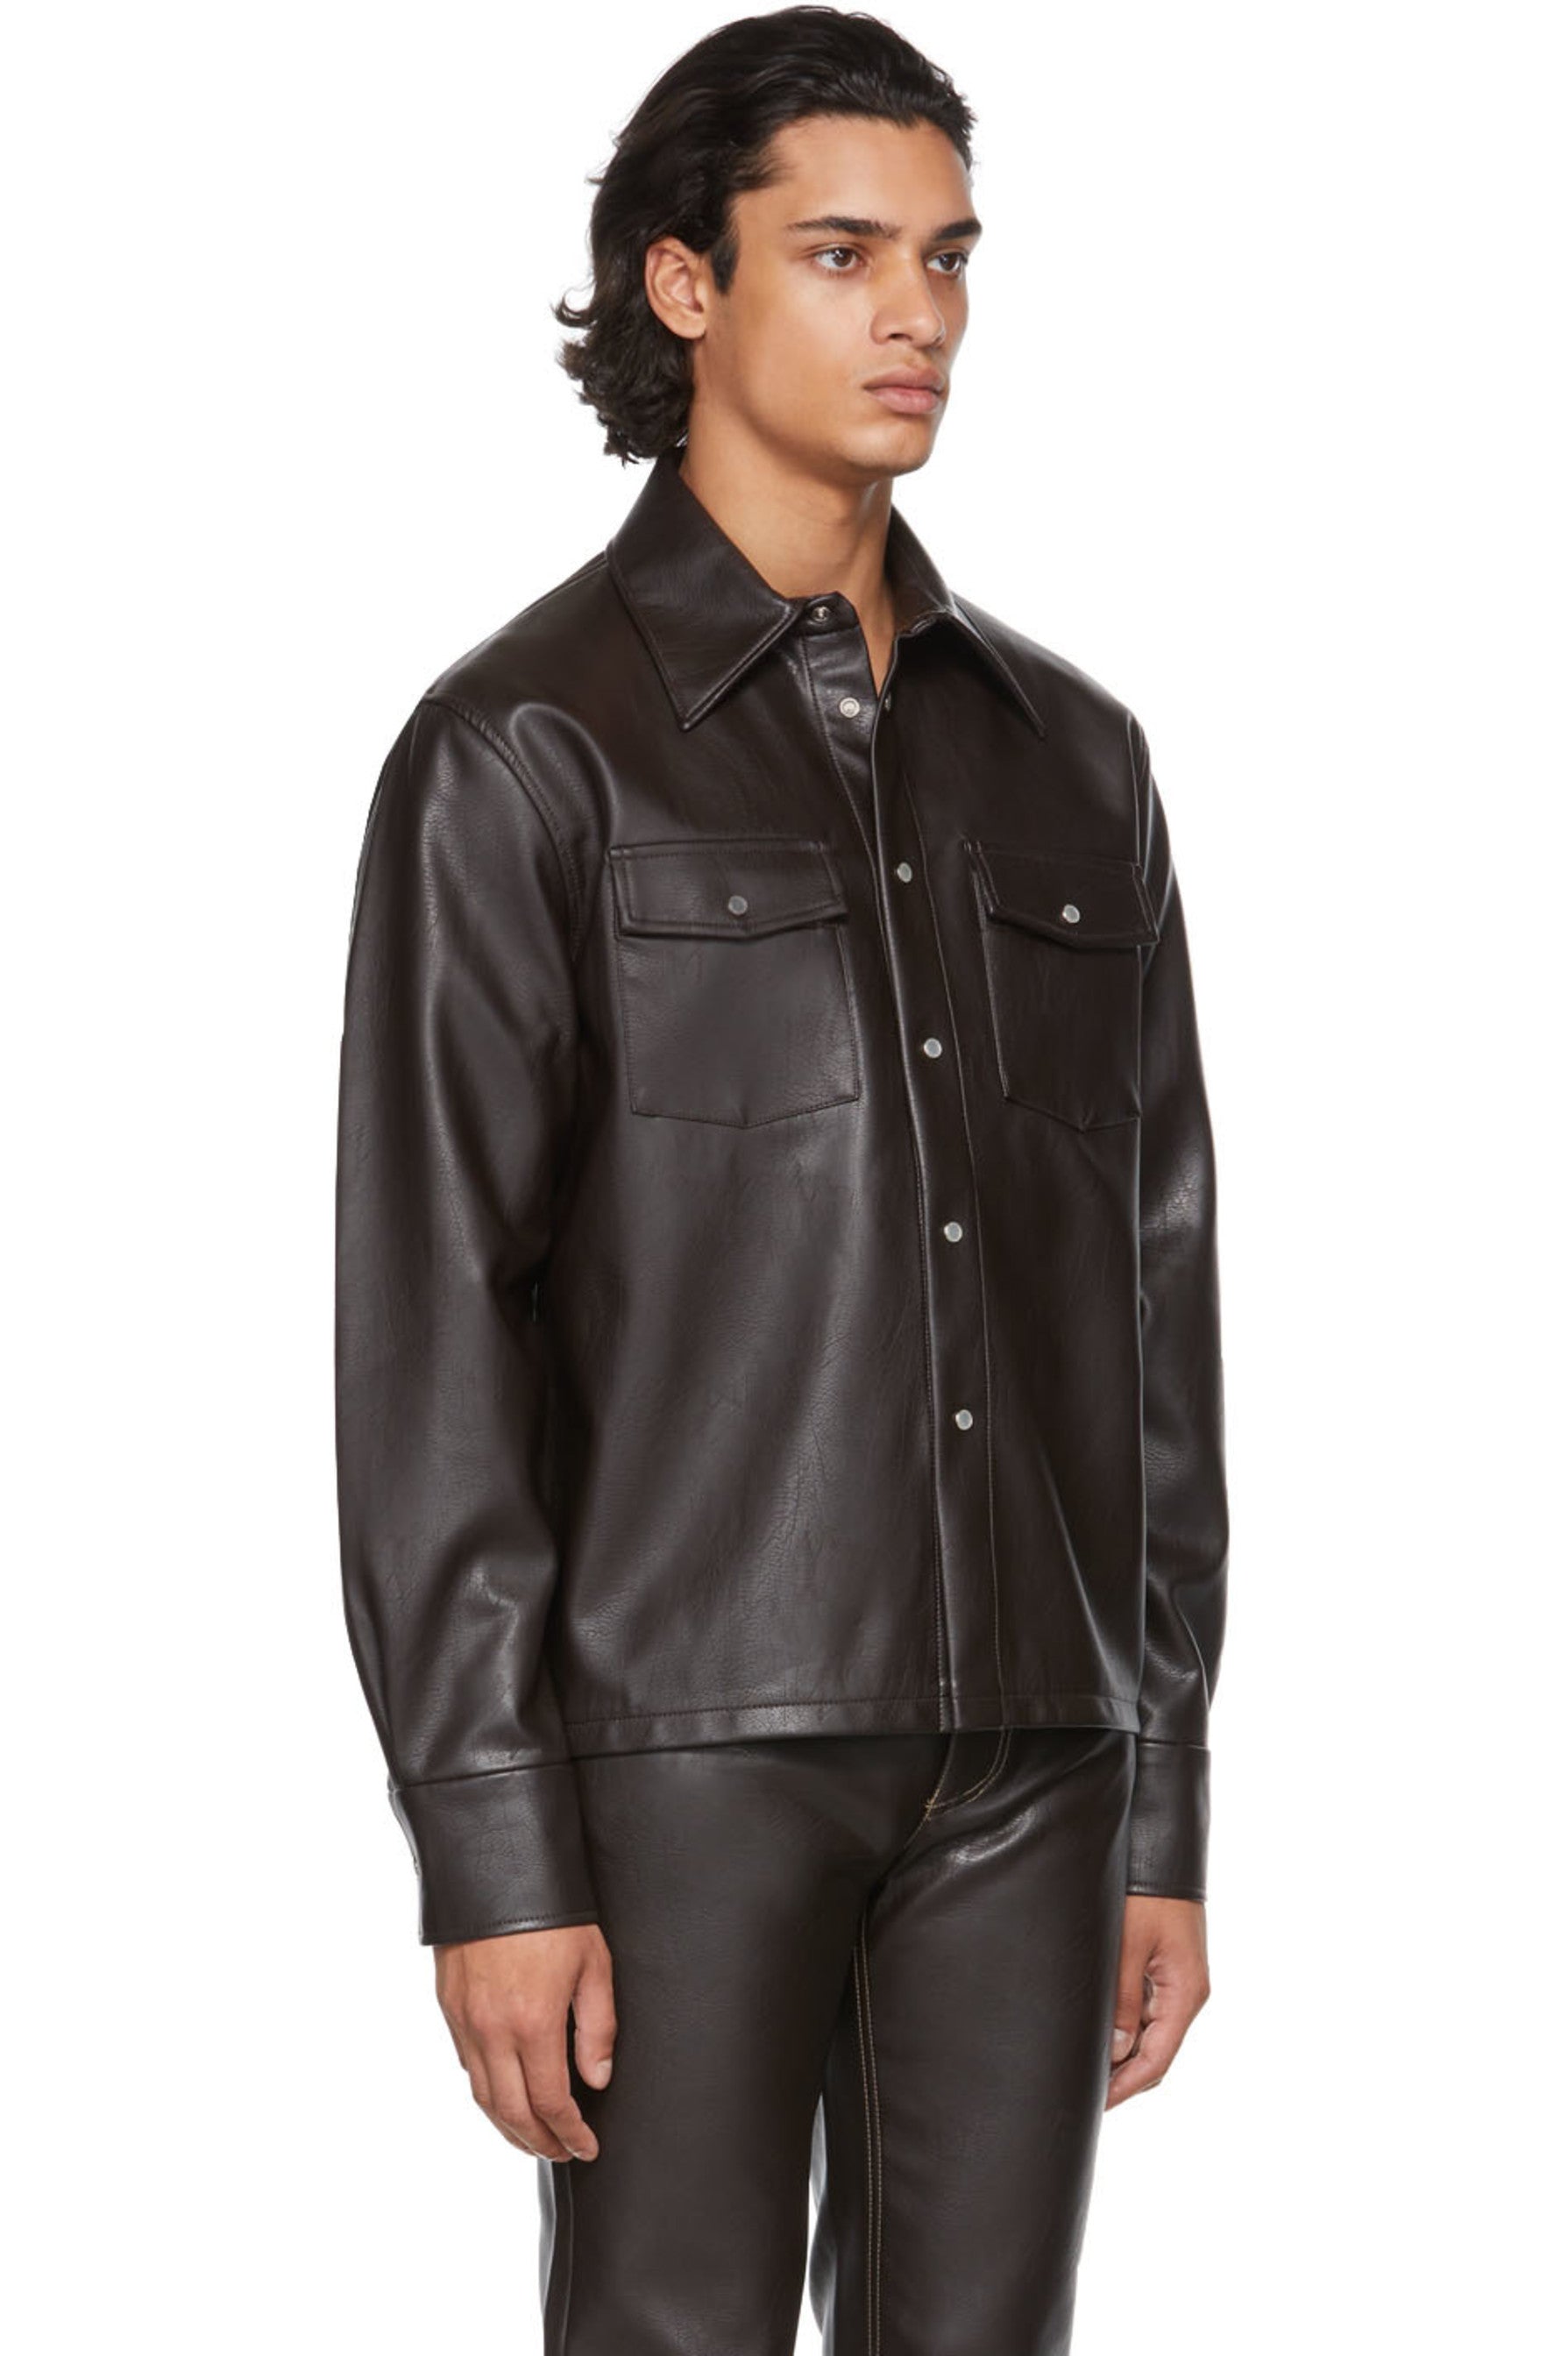 Men's Full Sleeve Black Trucker Leather Shirt